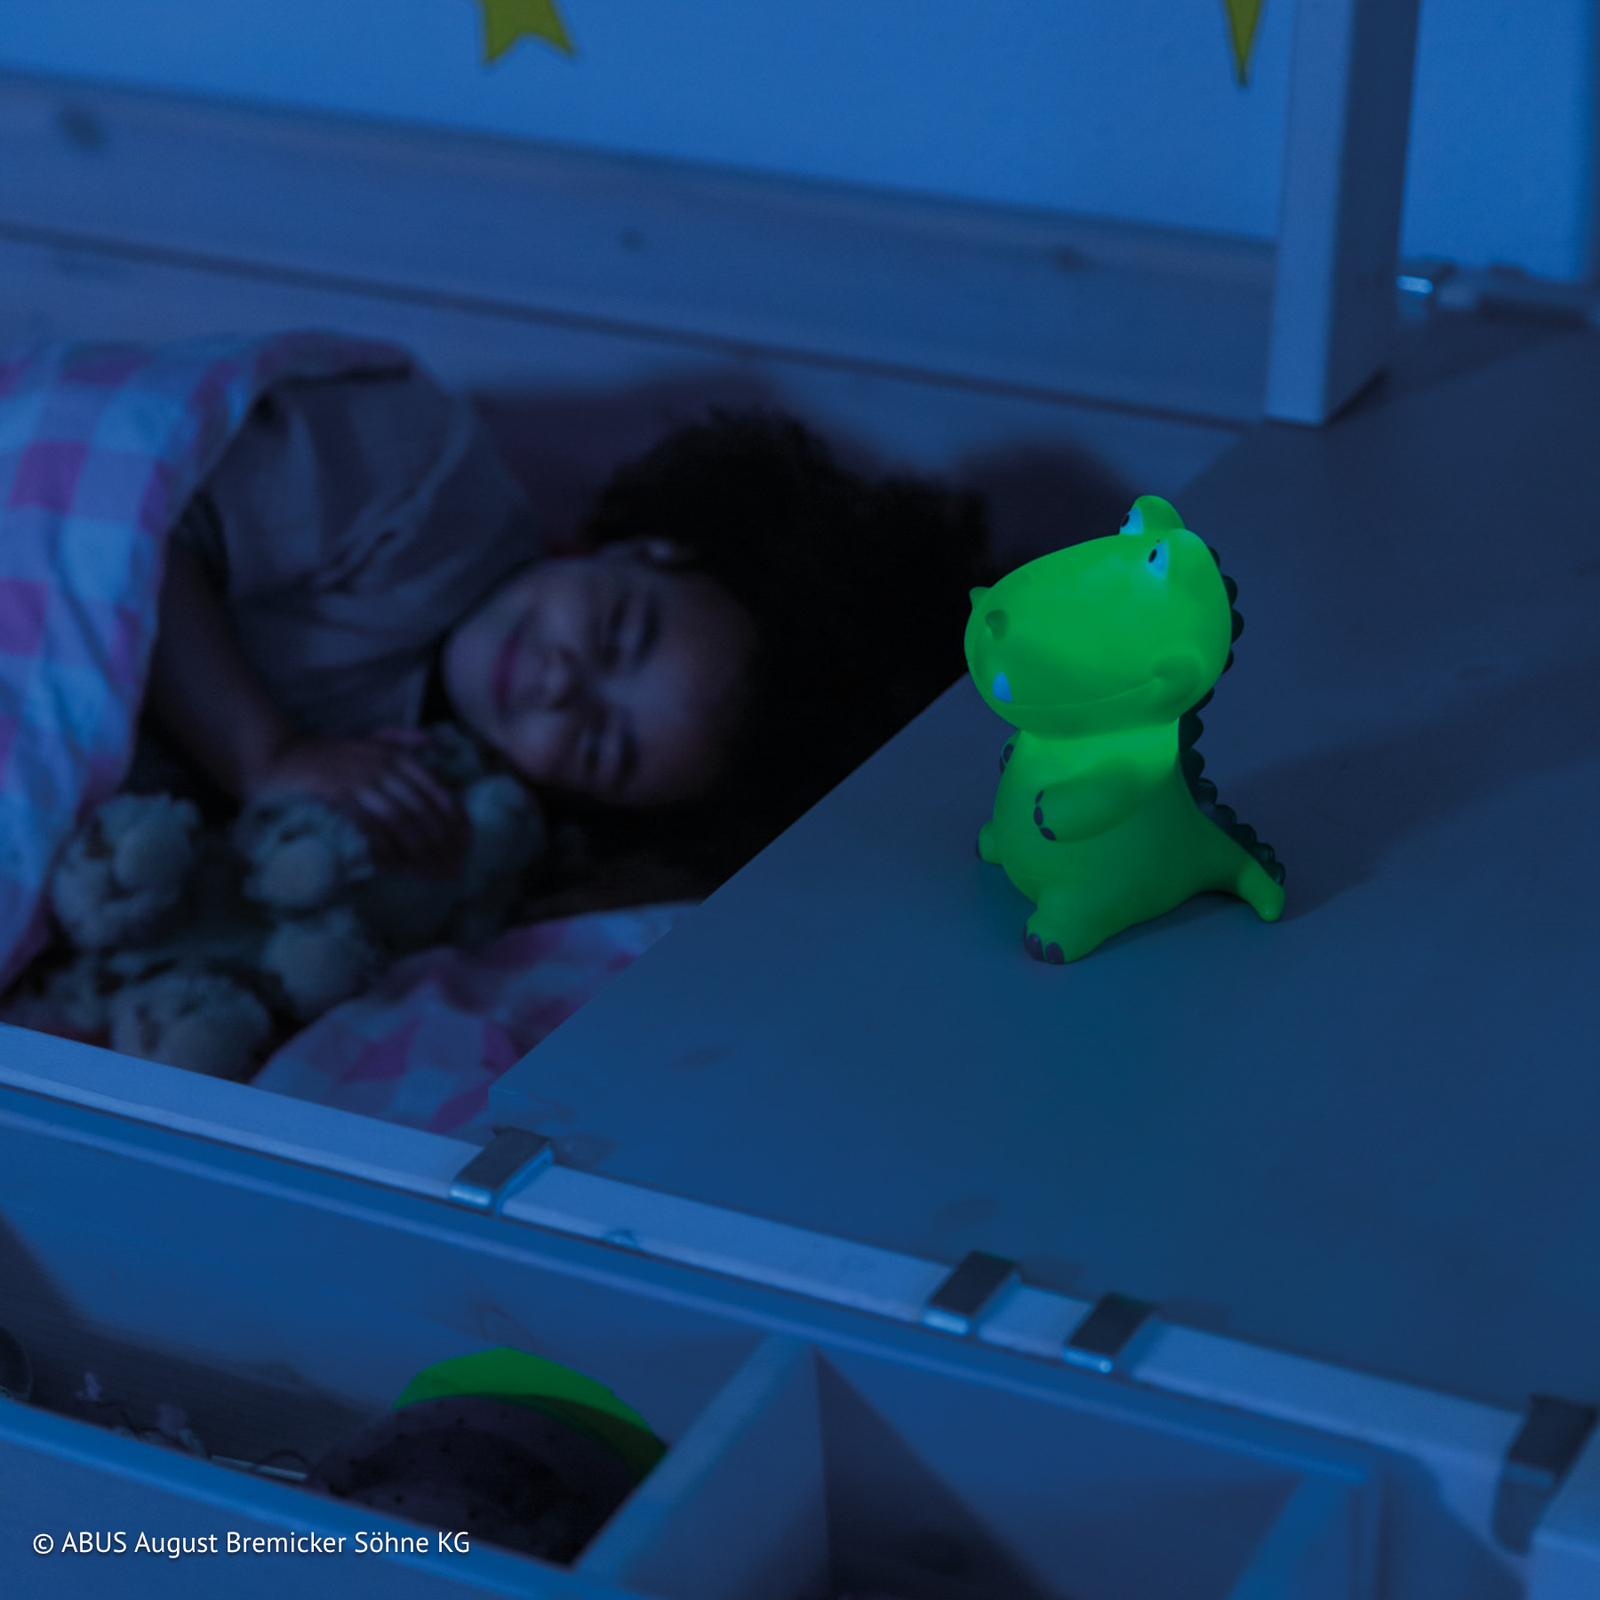 ABUS Dana LED nachtlamp in krokodilvorm